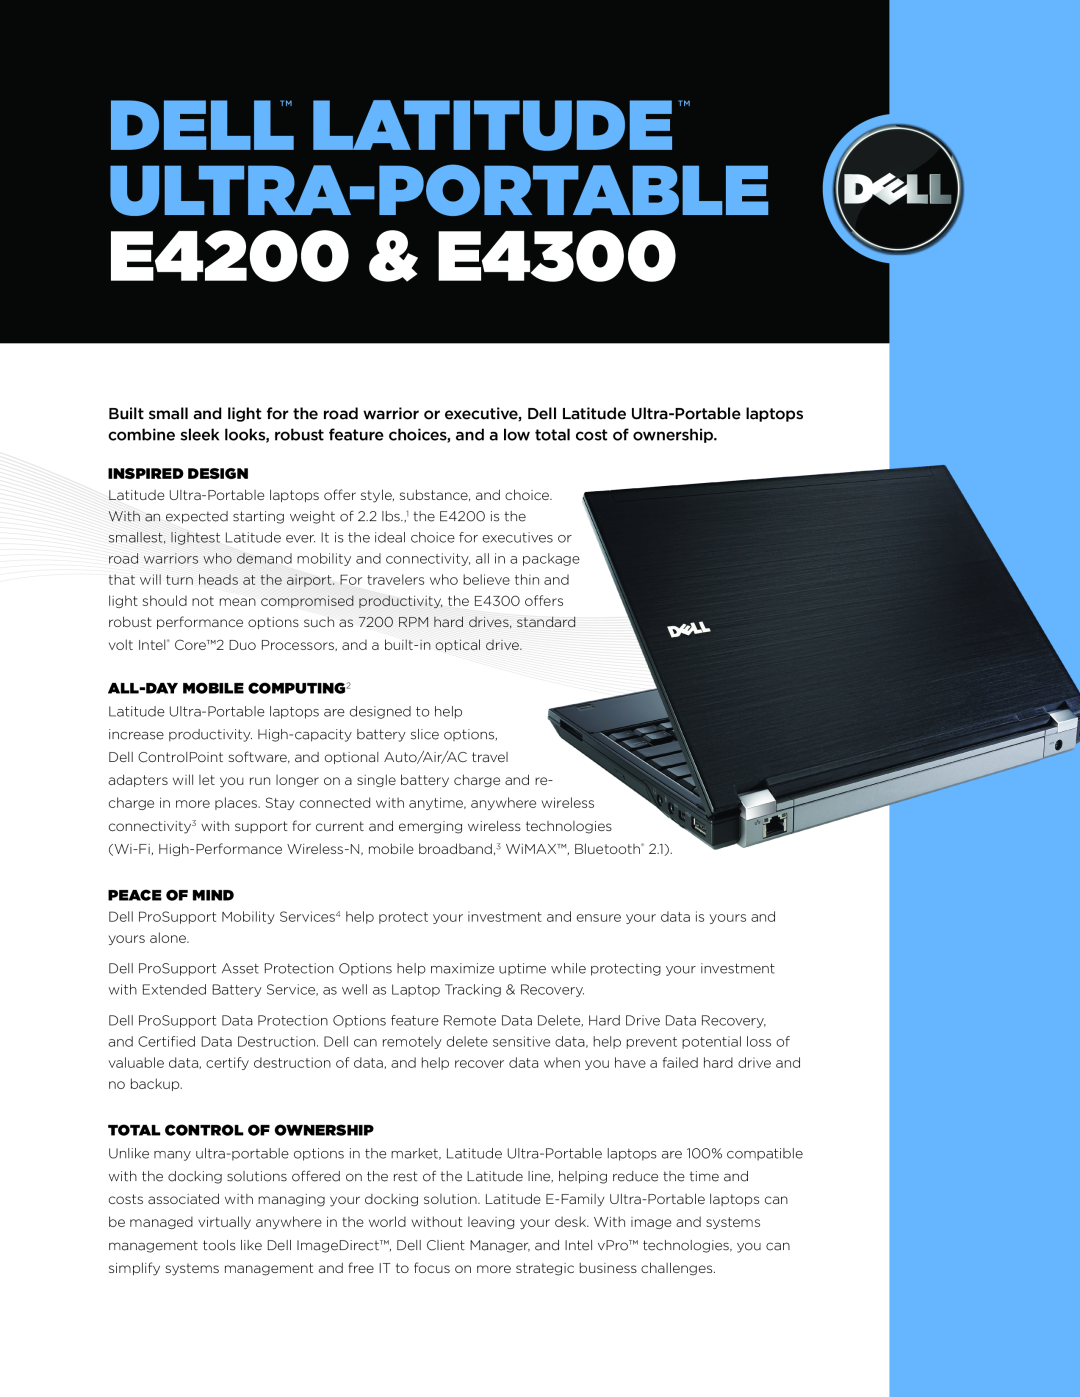 Dell manual DELL LATITUDE Ultra-Portable E4200 & E4300, INSPIRED Design, All-Day Mobile Computing2, Peace of Mind 